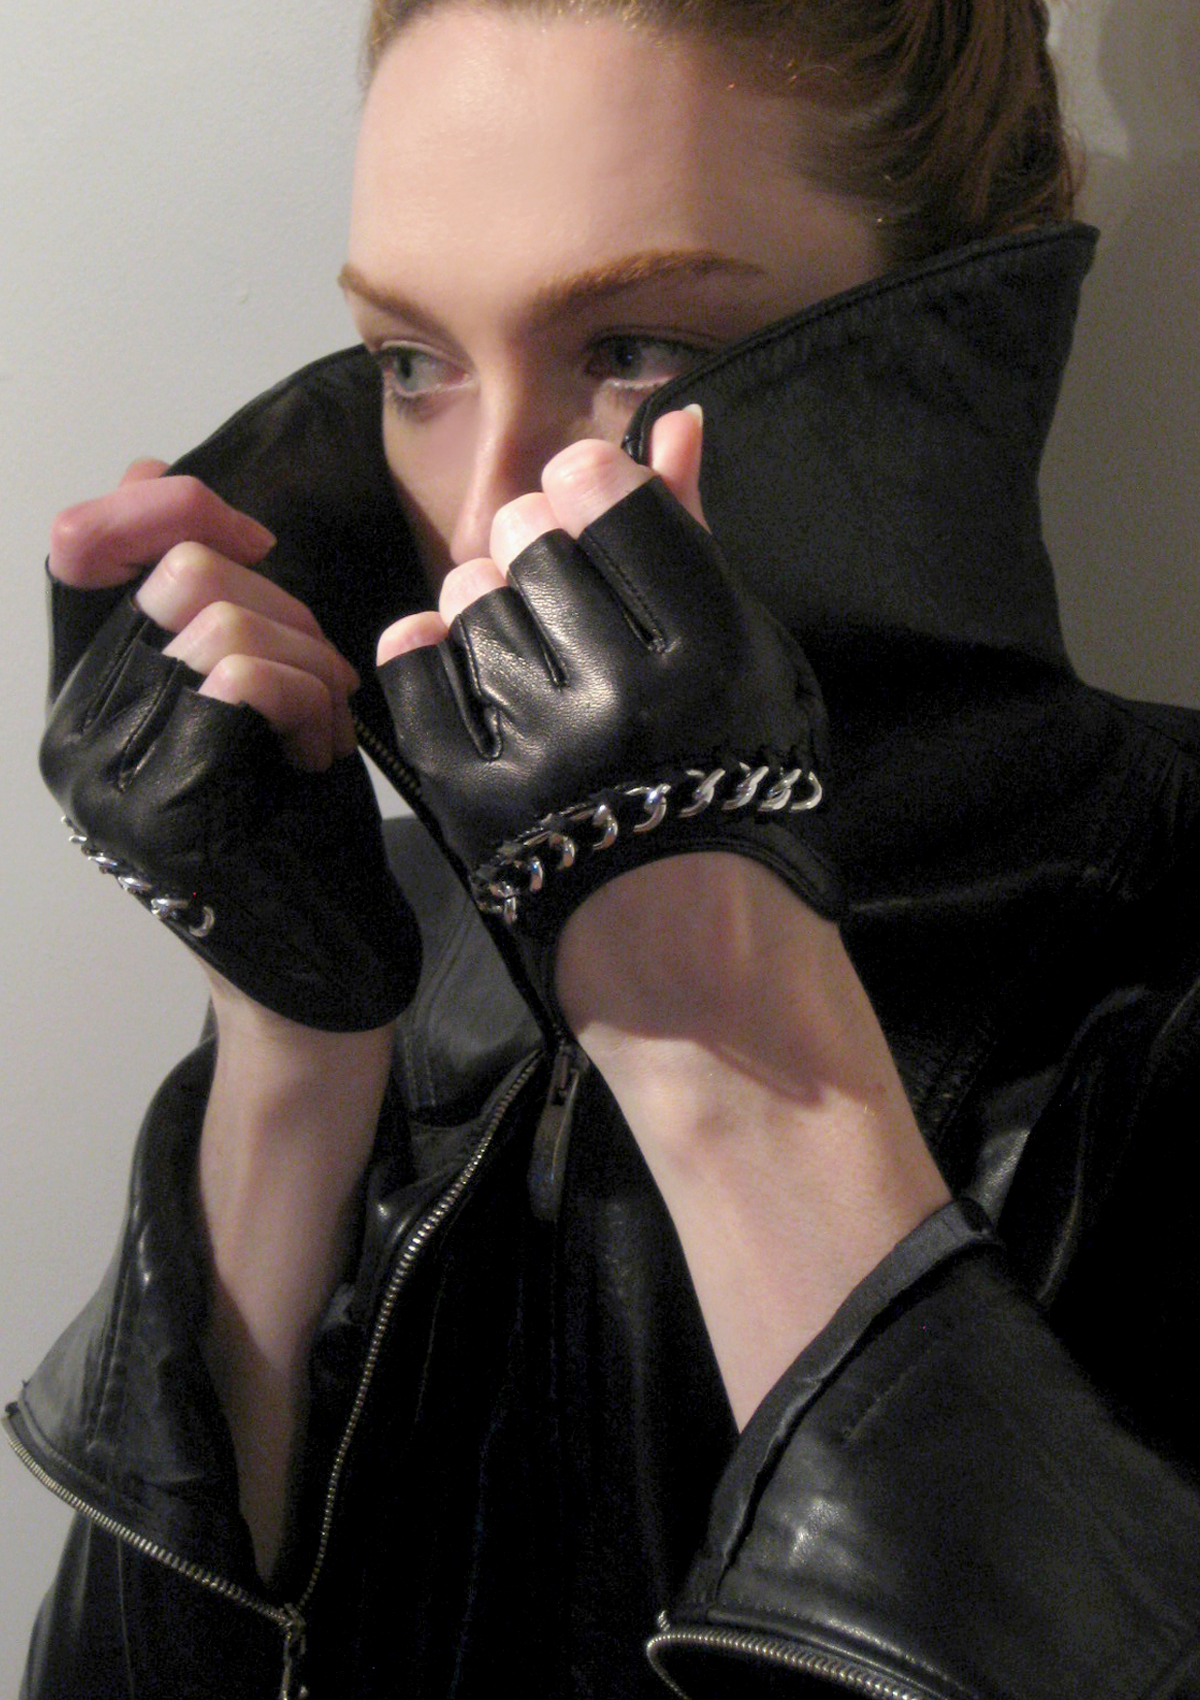 Fingerless Leather & Chain Gloves